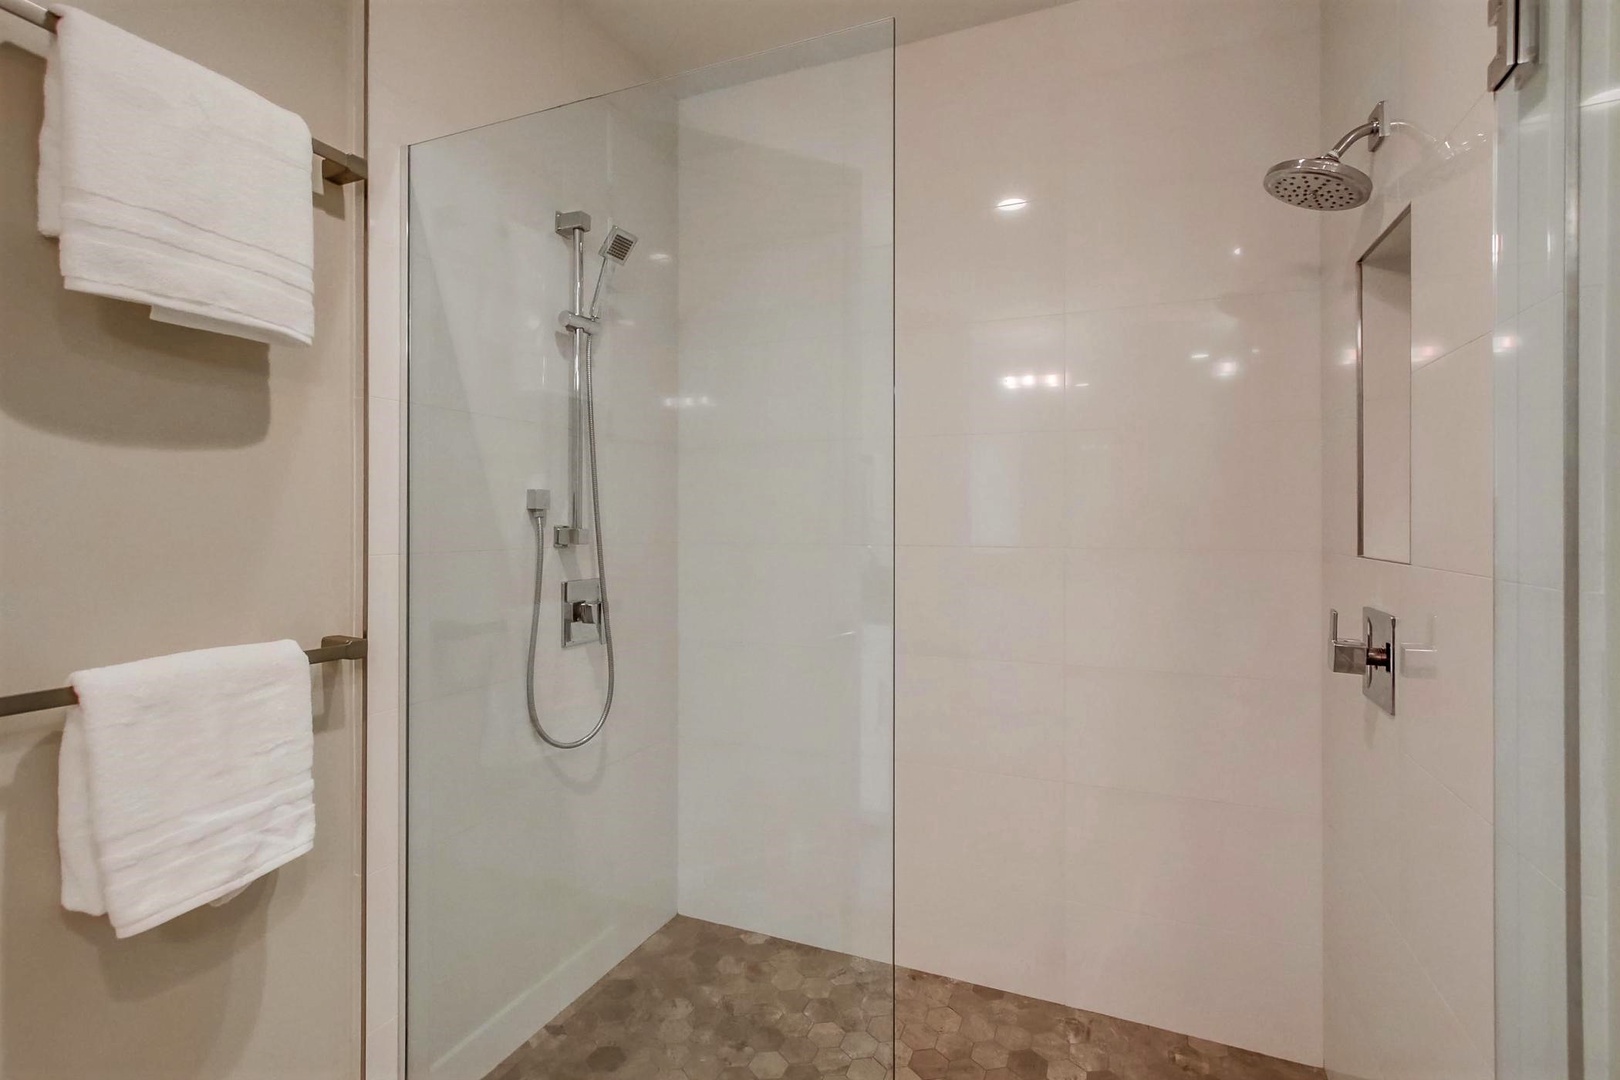 En suite bath with walk-in shower